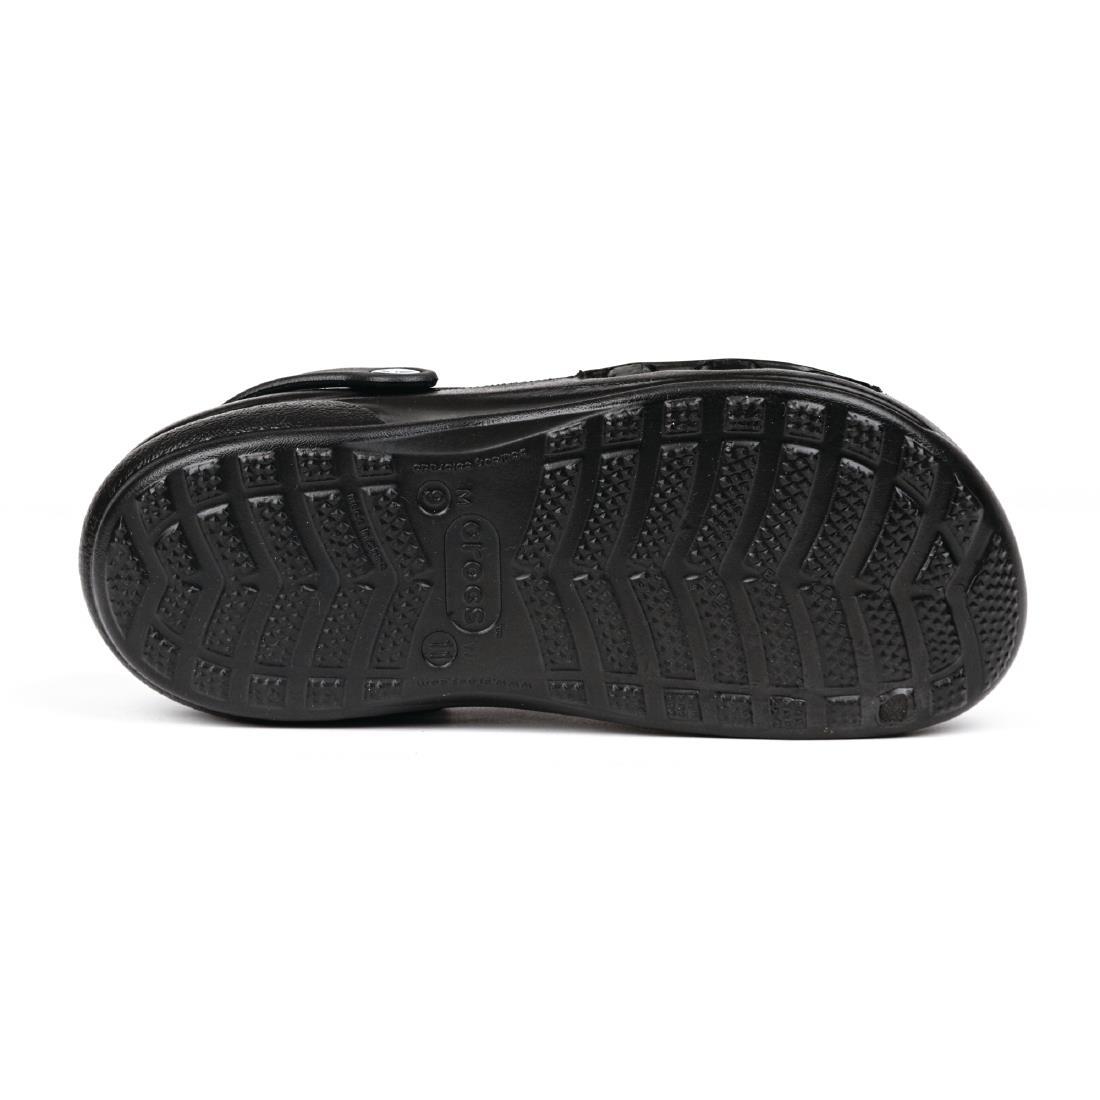 Crocs Specialist Vent Clogs Black 36 - A478-36  - 4